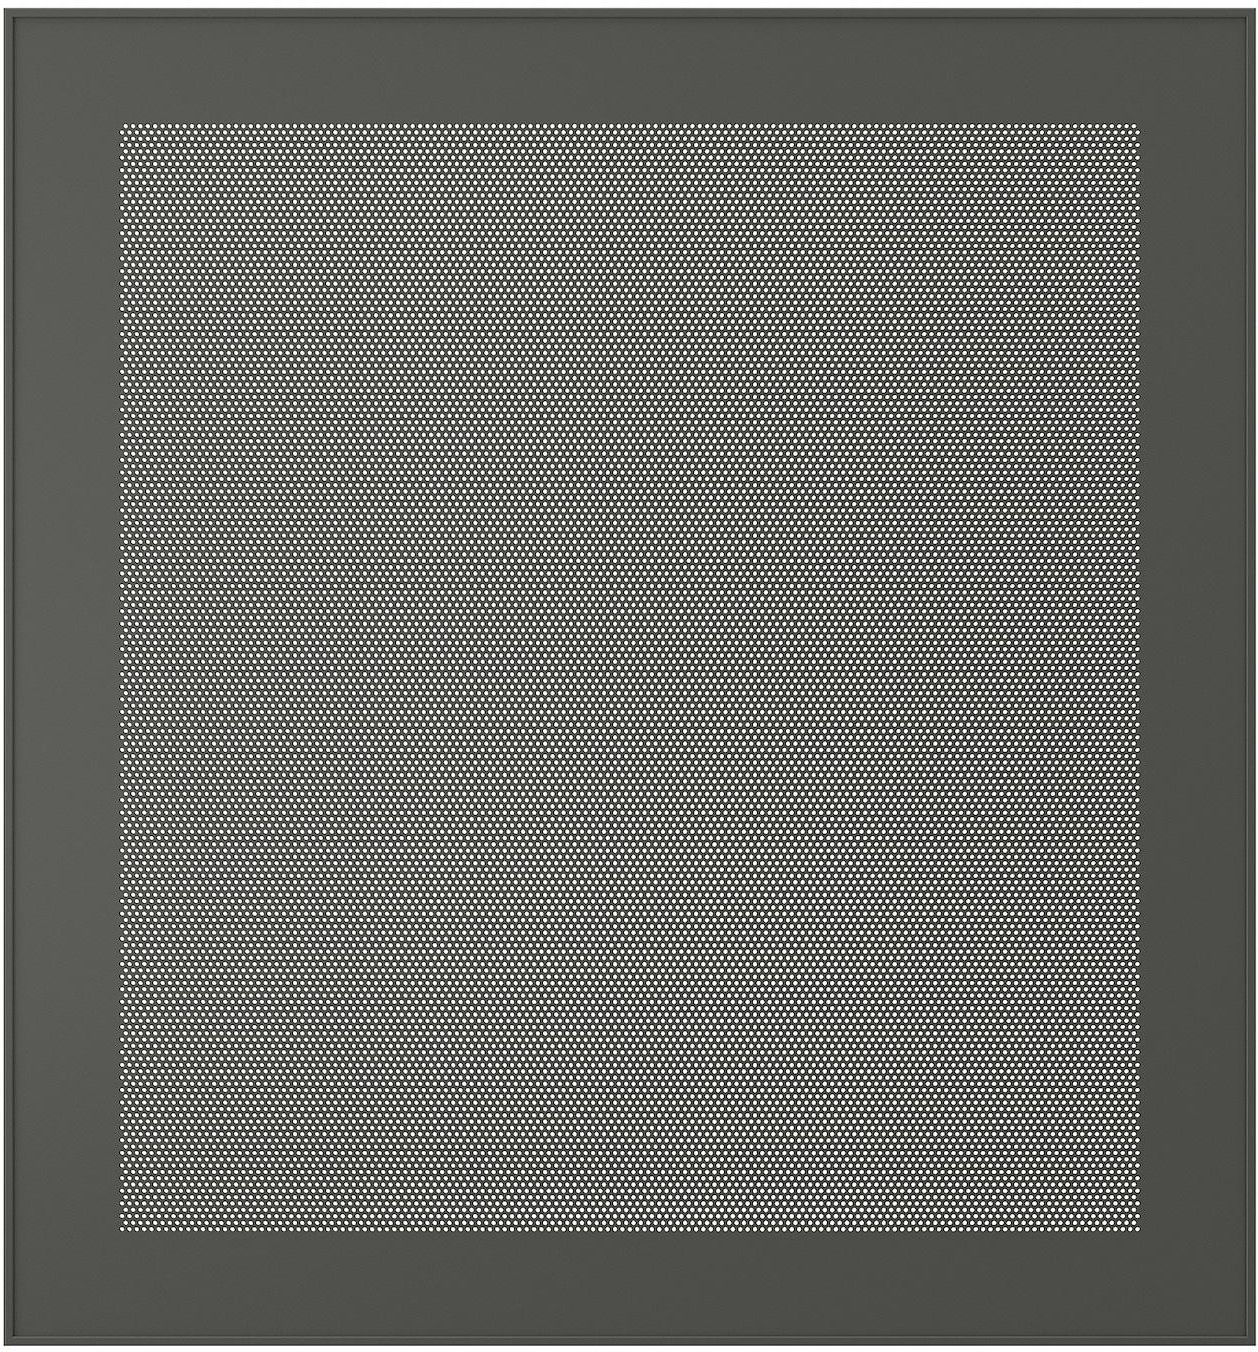 MÖRTVIKEN Door - dark grey 60x64 cm